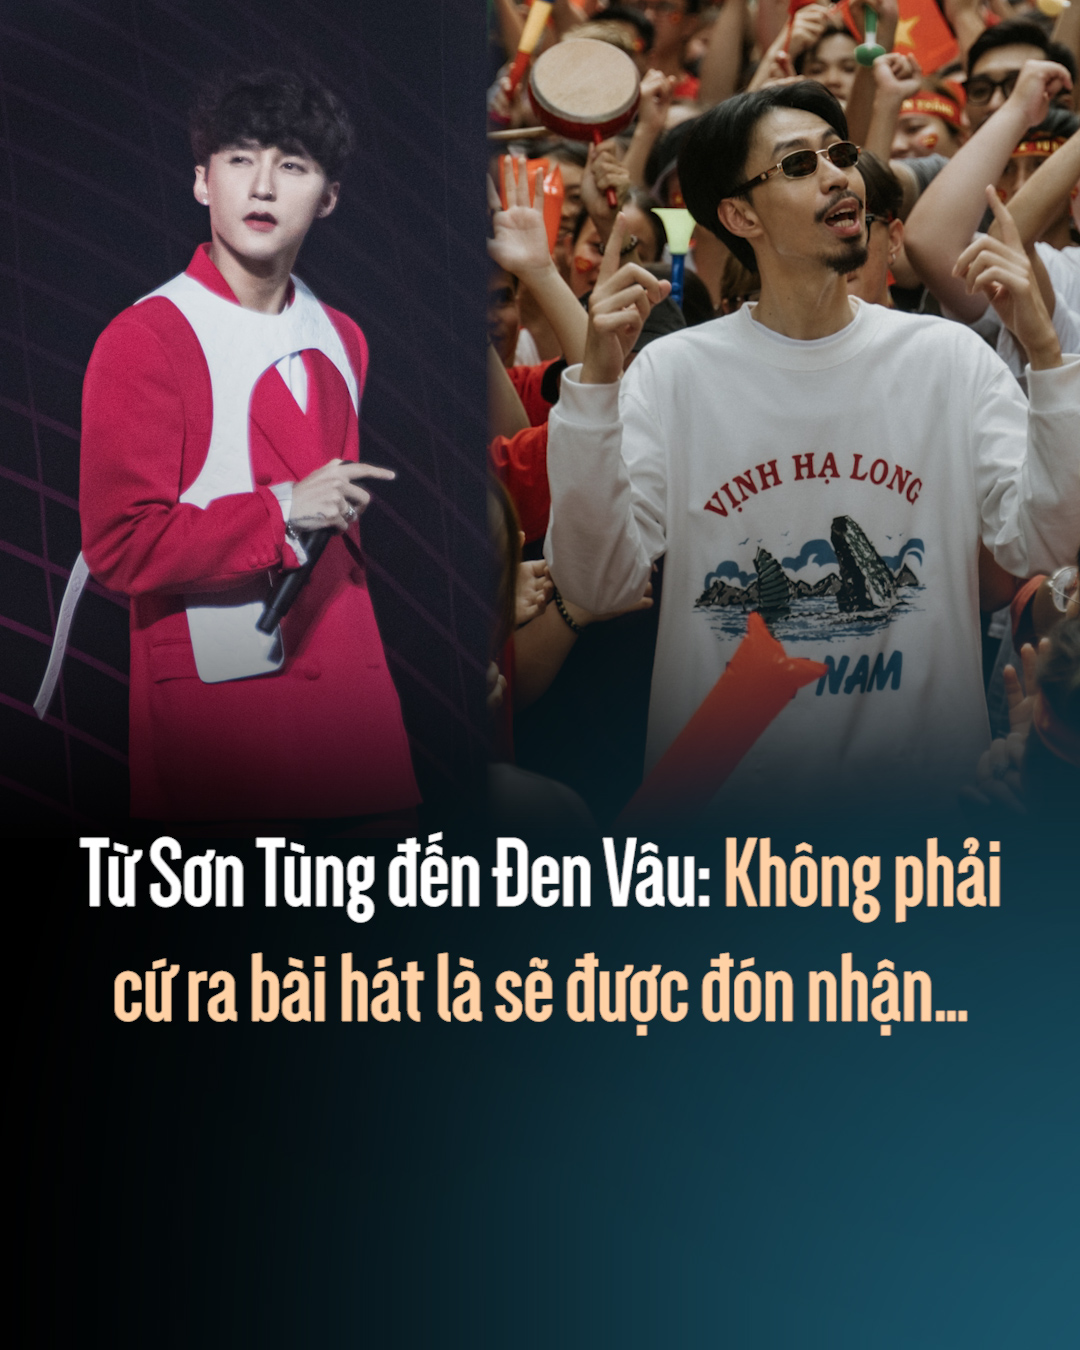 Đen Vâu là một nghệ sĩ rap được yêu thích hàng đầu tại Việt Nam. Hãy xem hình ảnh liên quan đến anh ấy để cảm nhận sự độc đáo và sáng tạo của nghệ thuật rap, đồng thời cũng được liên kết với từng lời bài hát đầy cảm hứng.